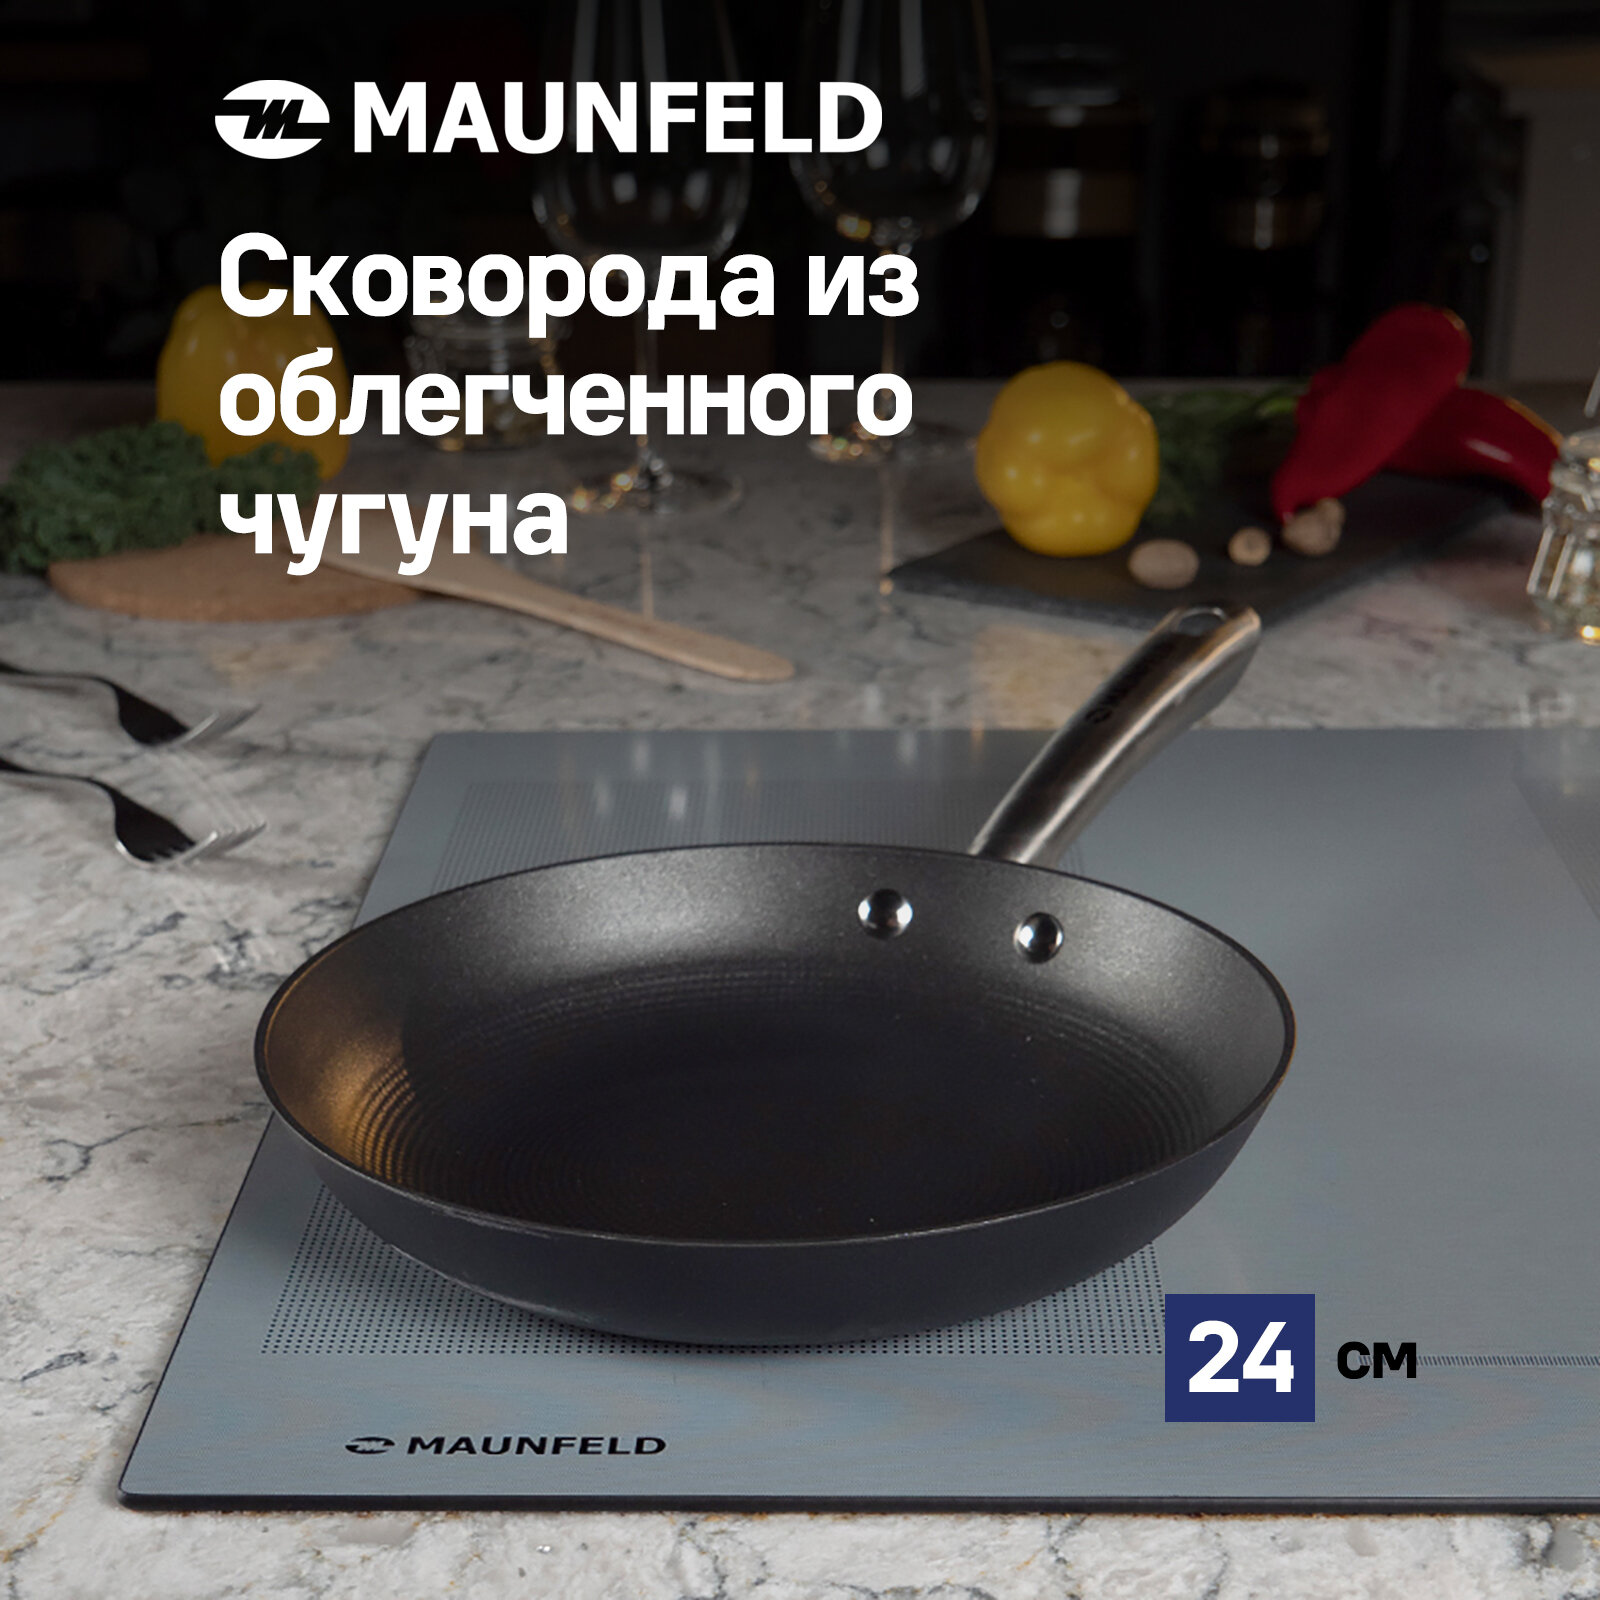 Сковорода MAUNFELD HOWARD MFP24LC15 из облегченного чугуна, 24 см